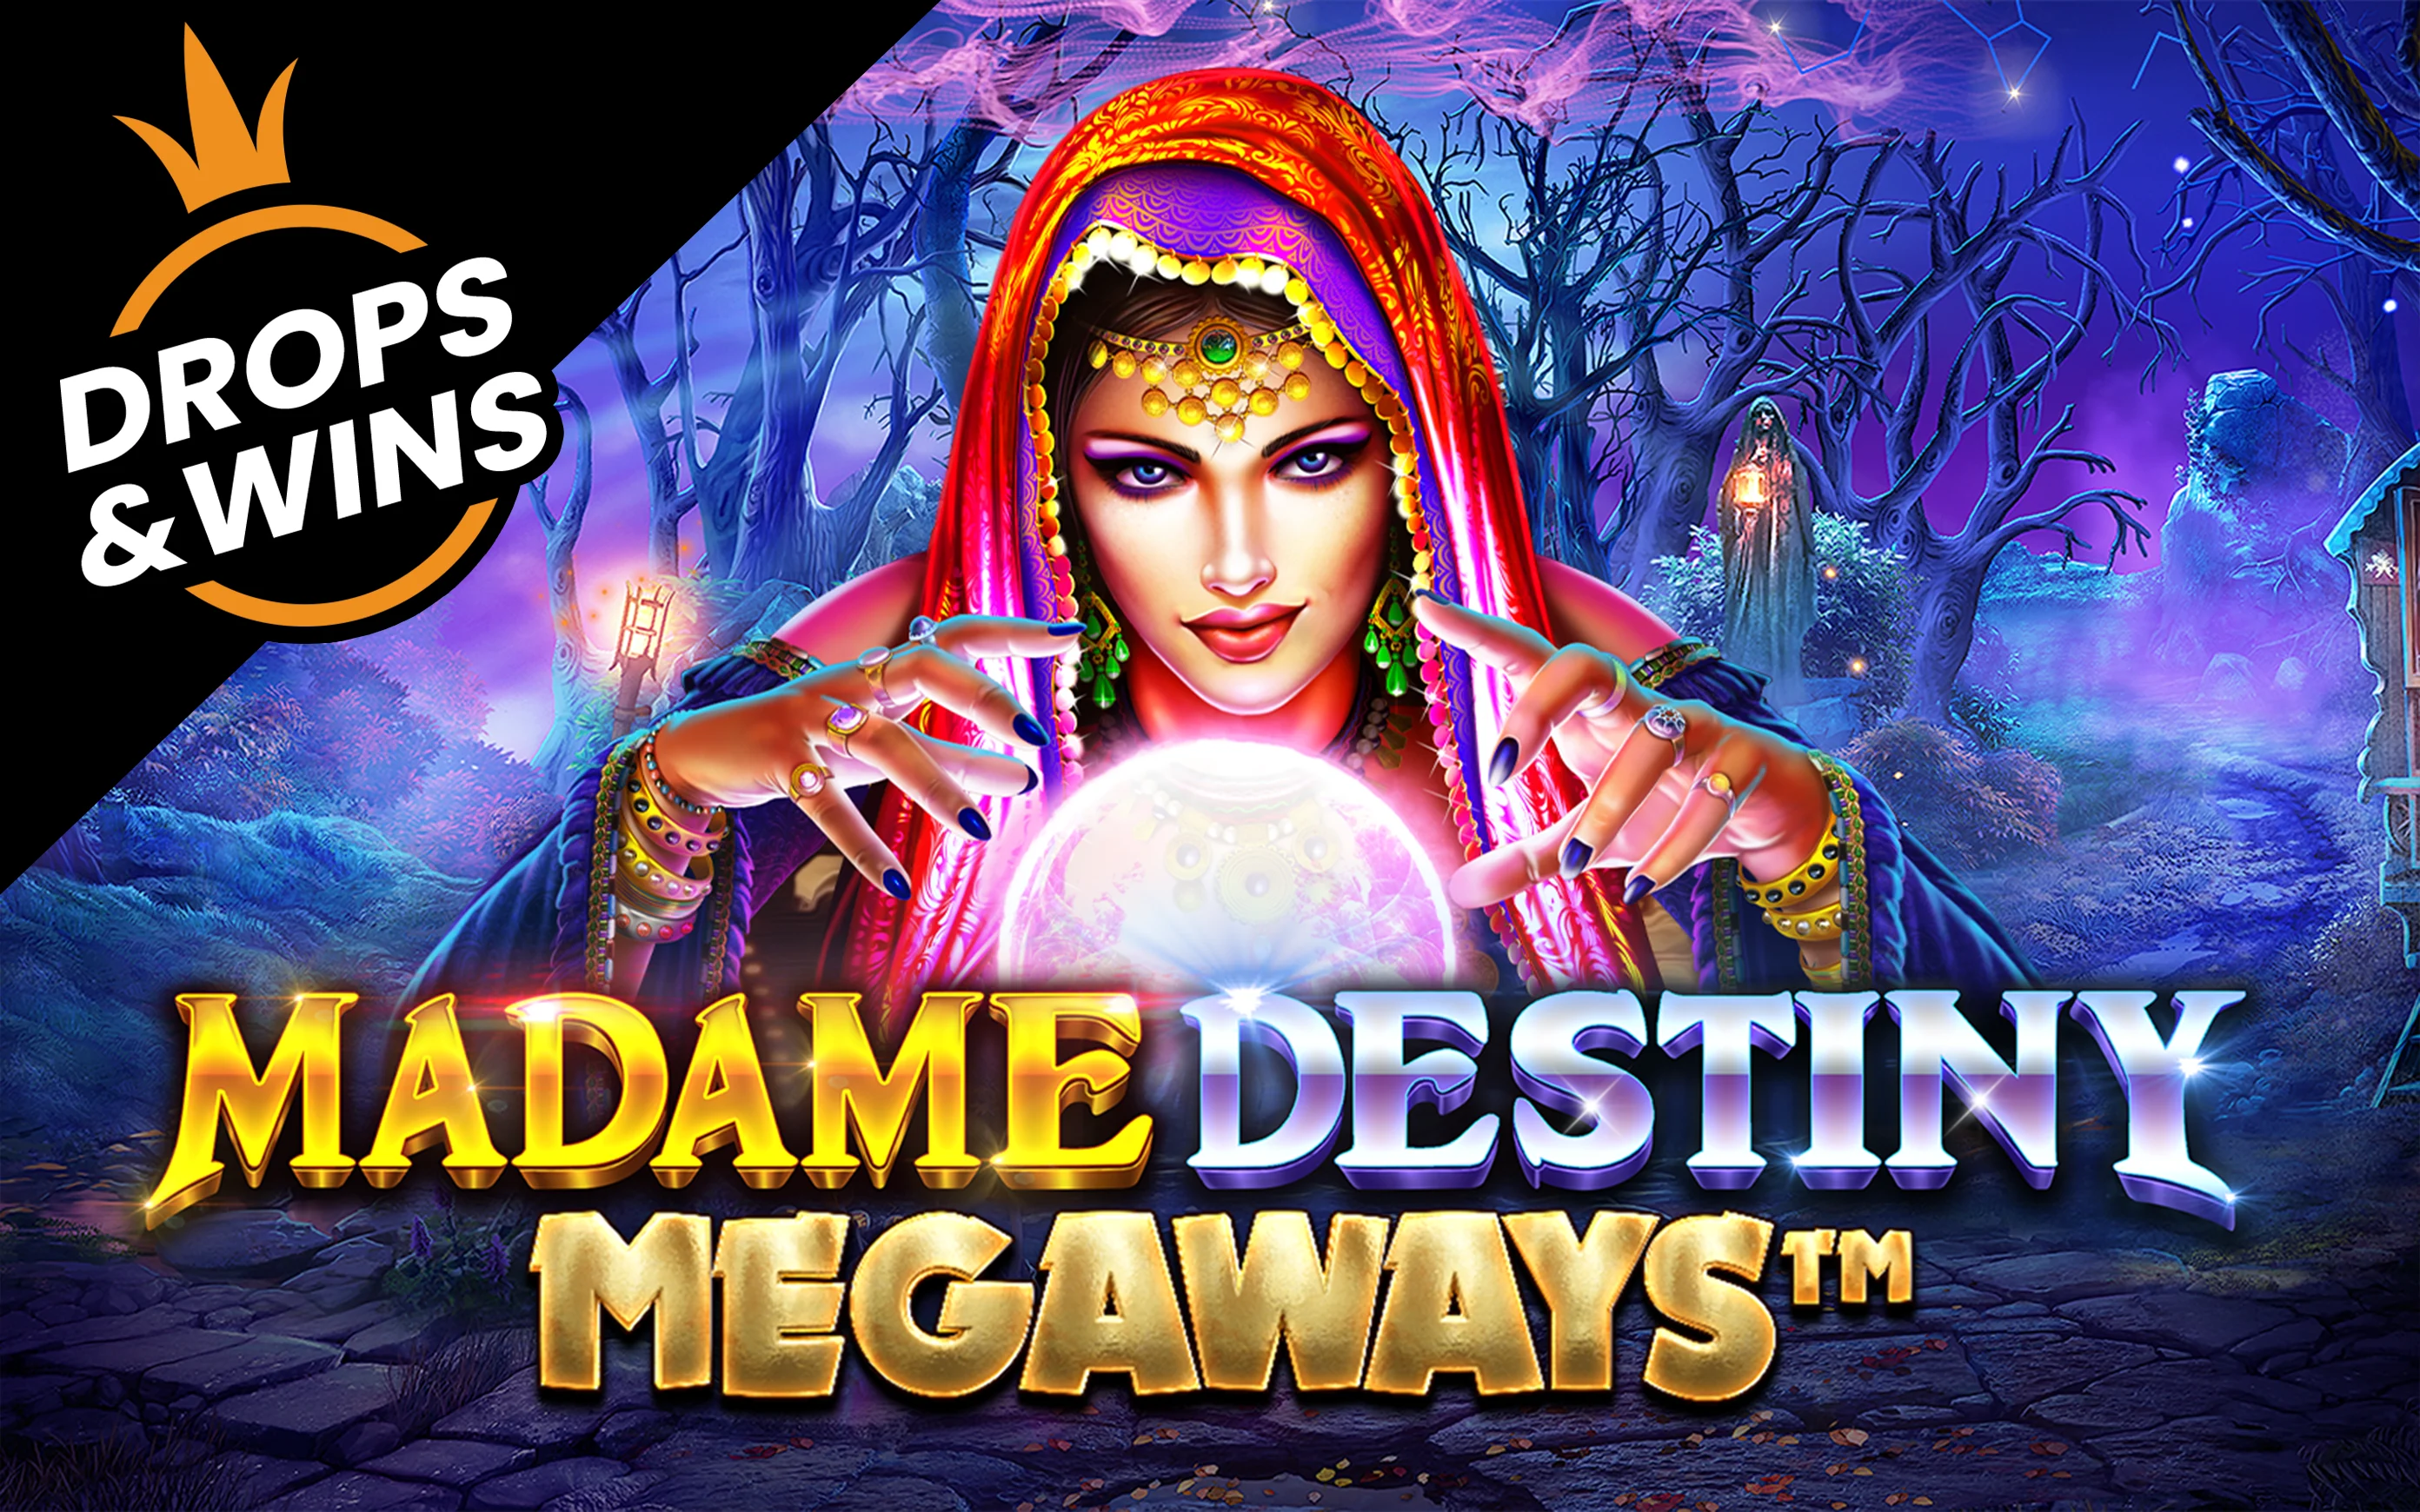 Zagraj w Madame Destiny Megaways™ w kasynie online Starcasino.be